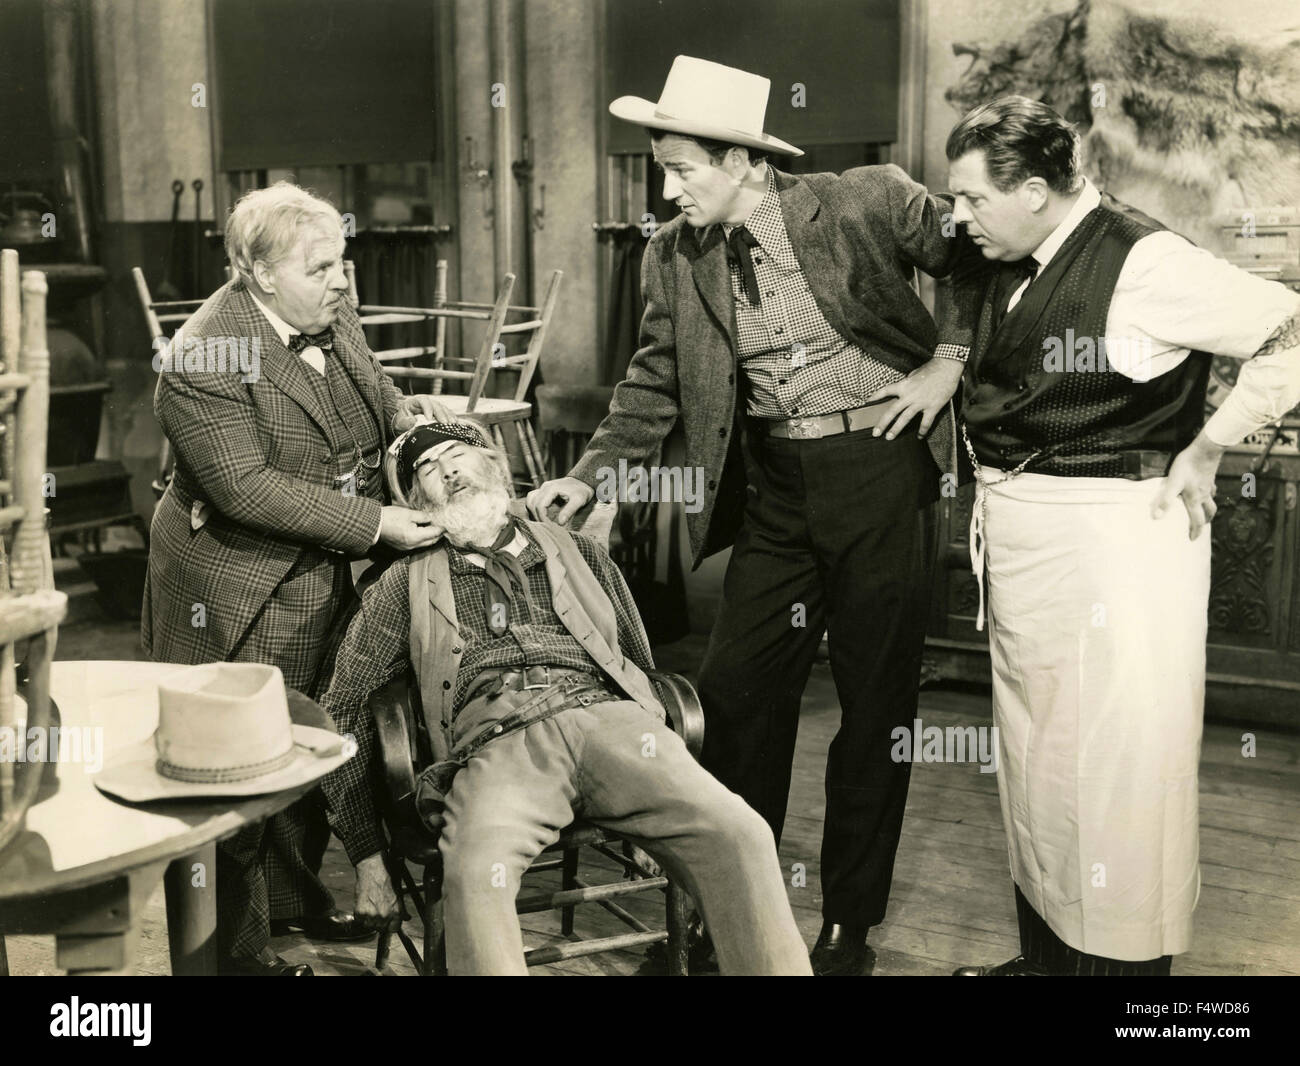 Les acteurs américains John Wayne et George 'Gabby' Hayes dans une scène du film 'Tall dans la Selle' Banque D'Images